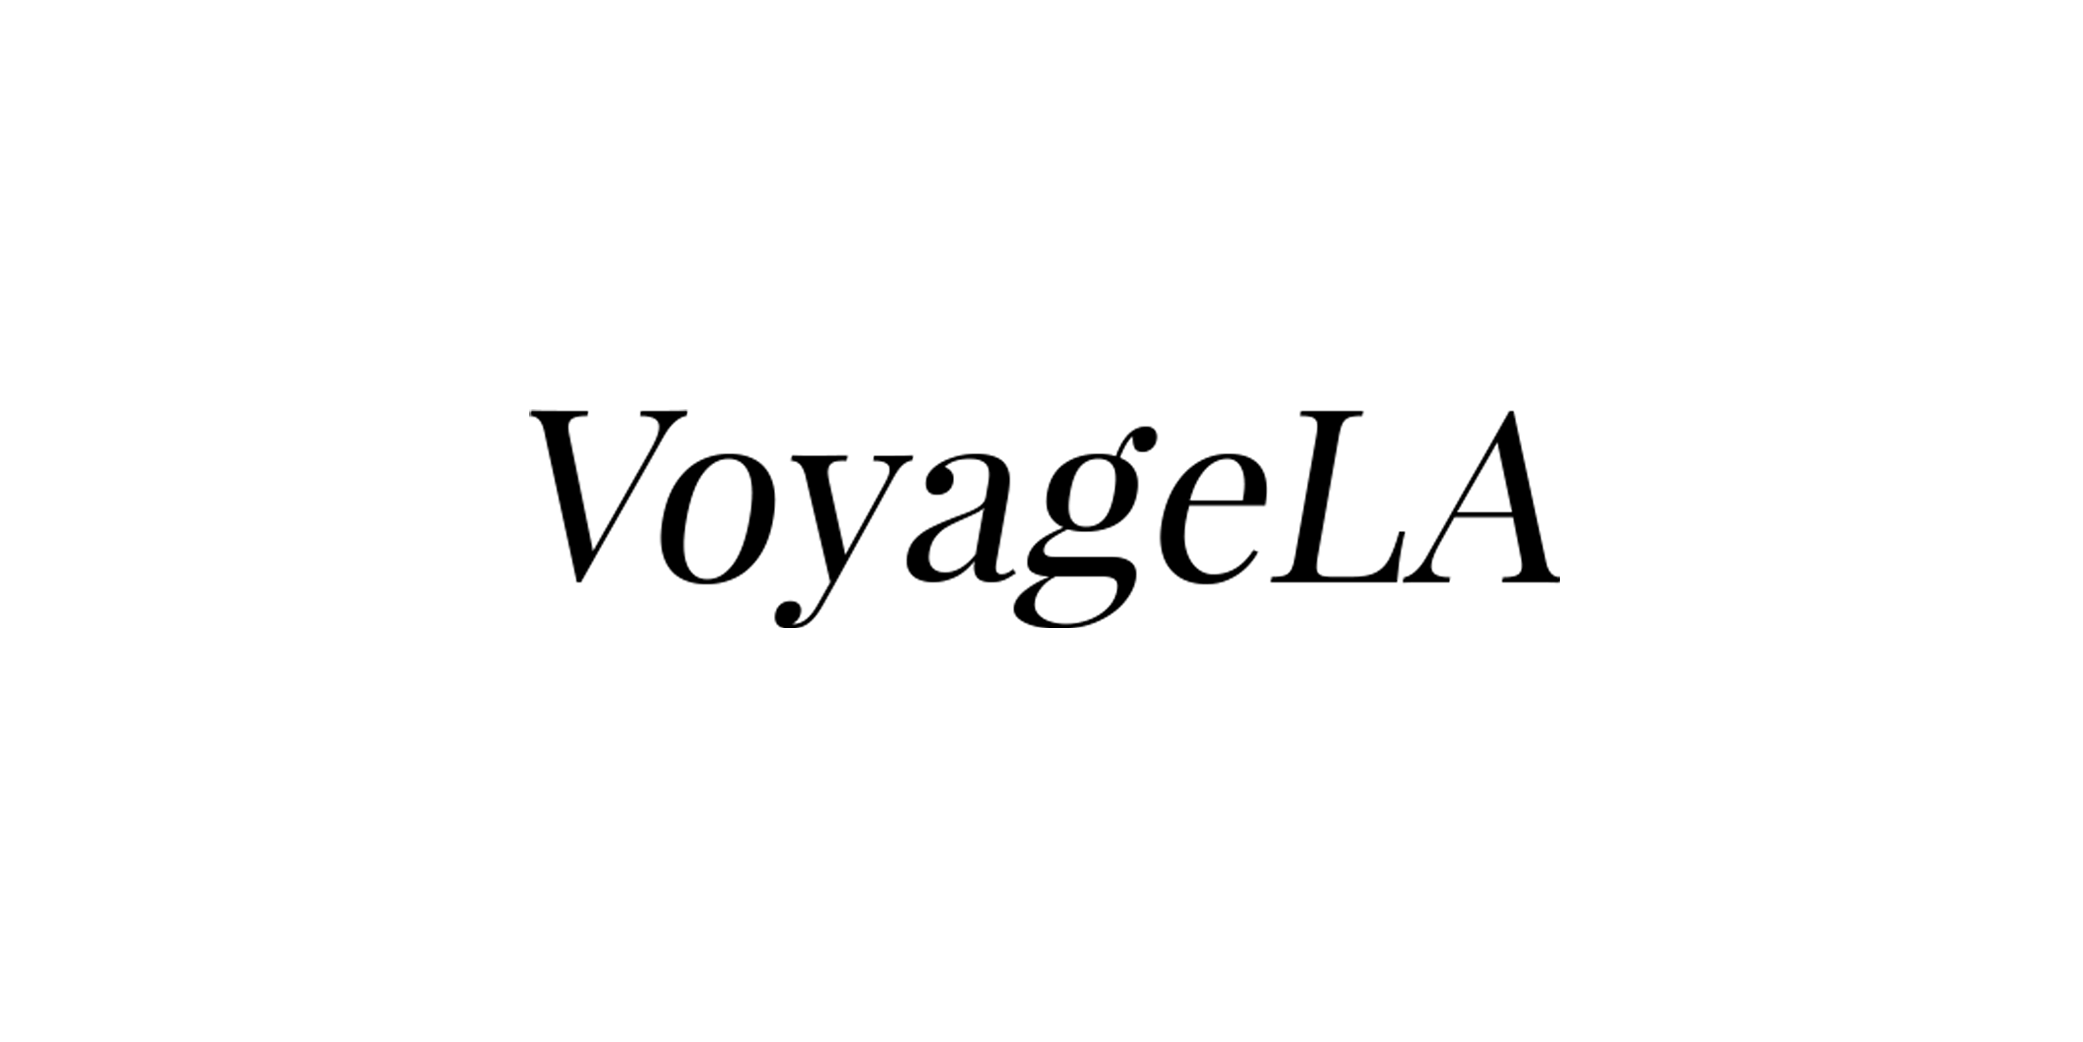 VoyageLA